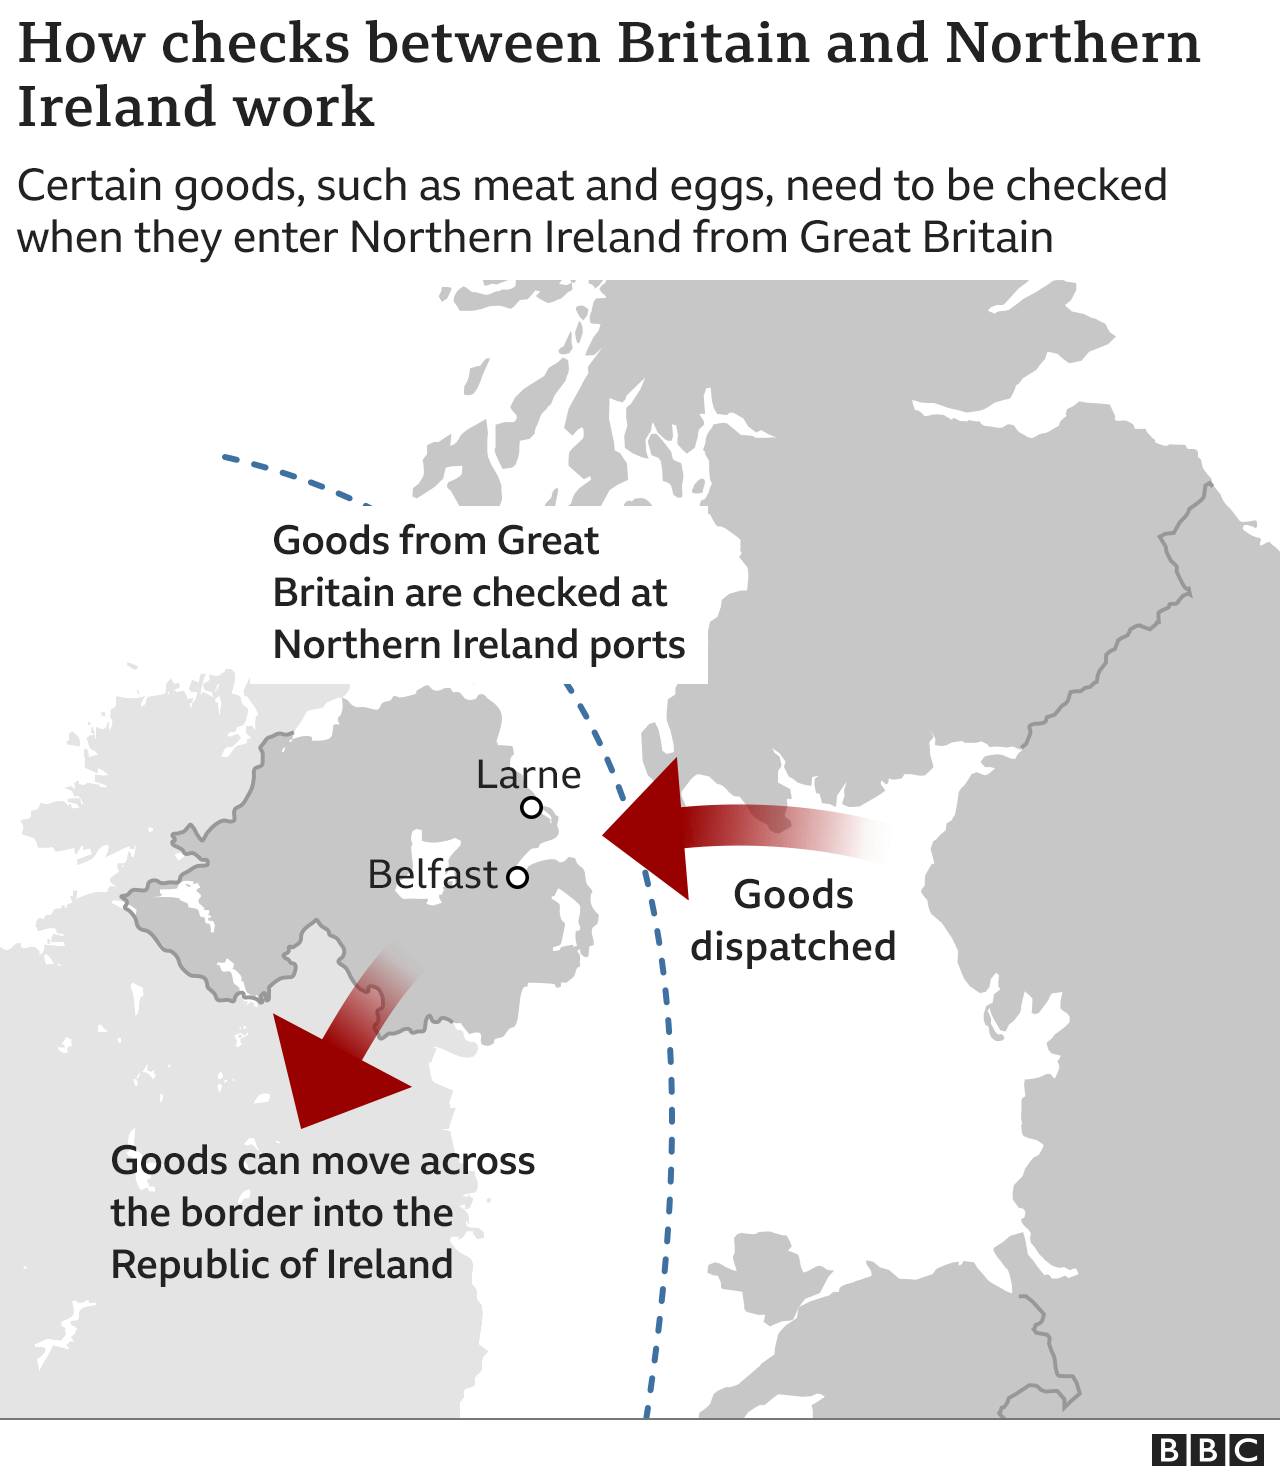 Eine Karte des Vereinigten Königreichs, die zeigt, wie Waren von GB nach NI und weiter in die Republik Irland reisen.